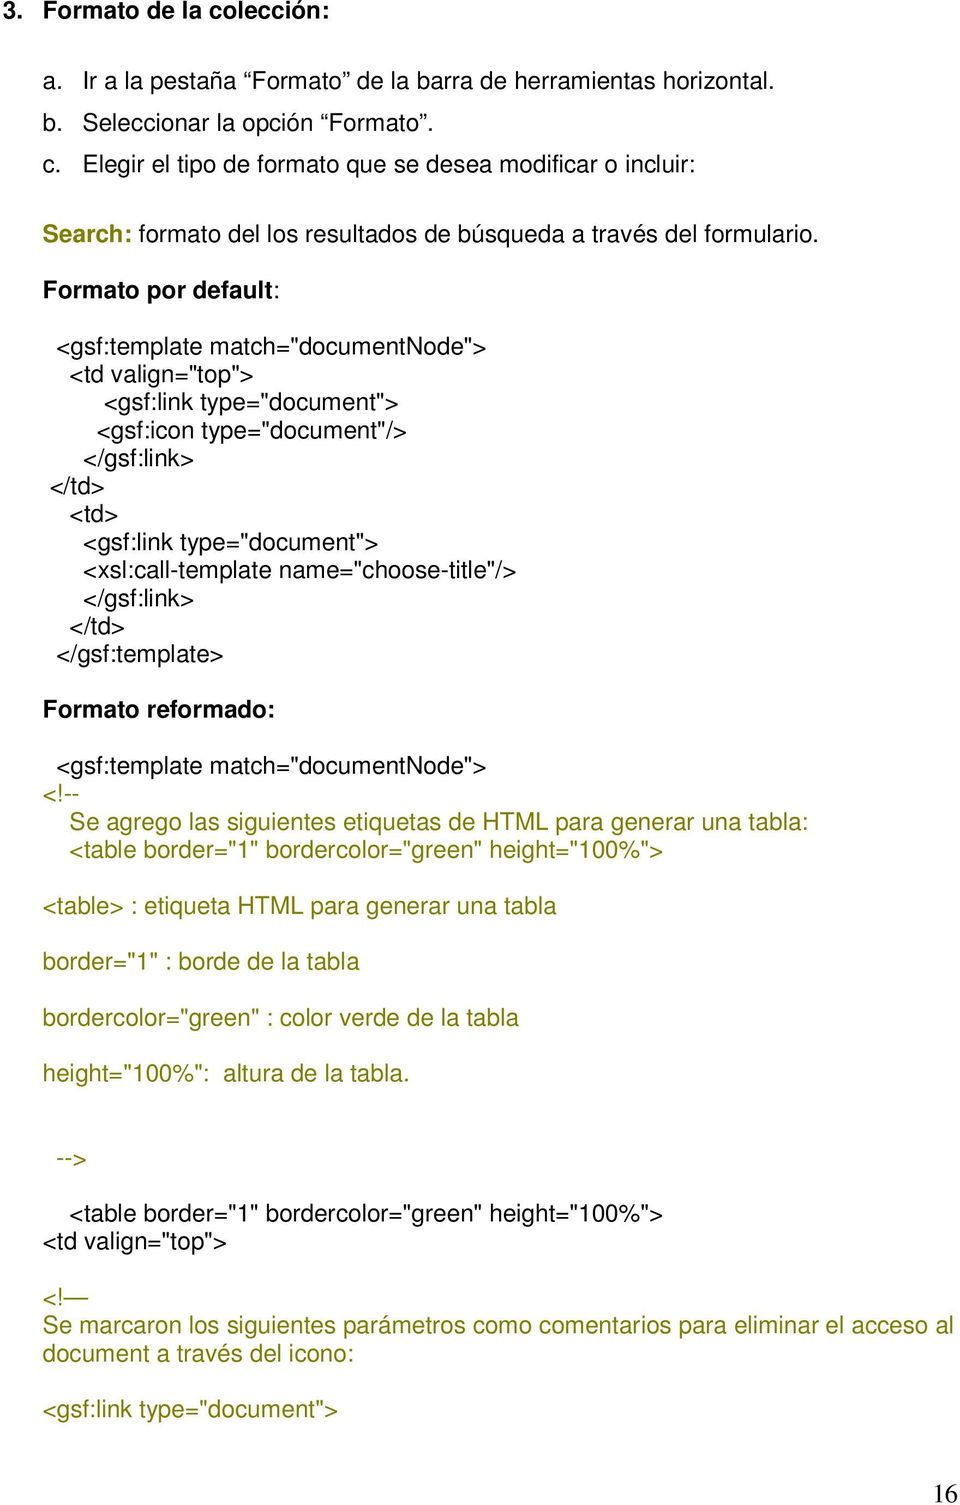 name="choose-title"/> Formato reformado: <gsf:template match="documentnode"> Se agrego las siguientes etiquetas de HTML para generar una tabla: <table border="1" bordercolor="green" height="100%">